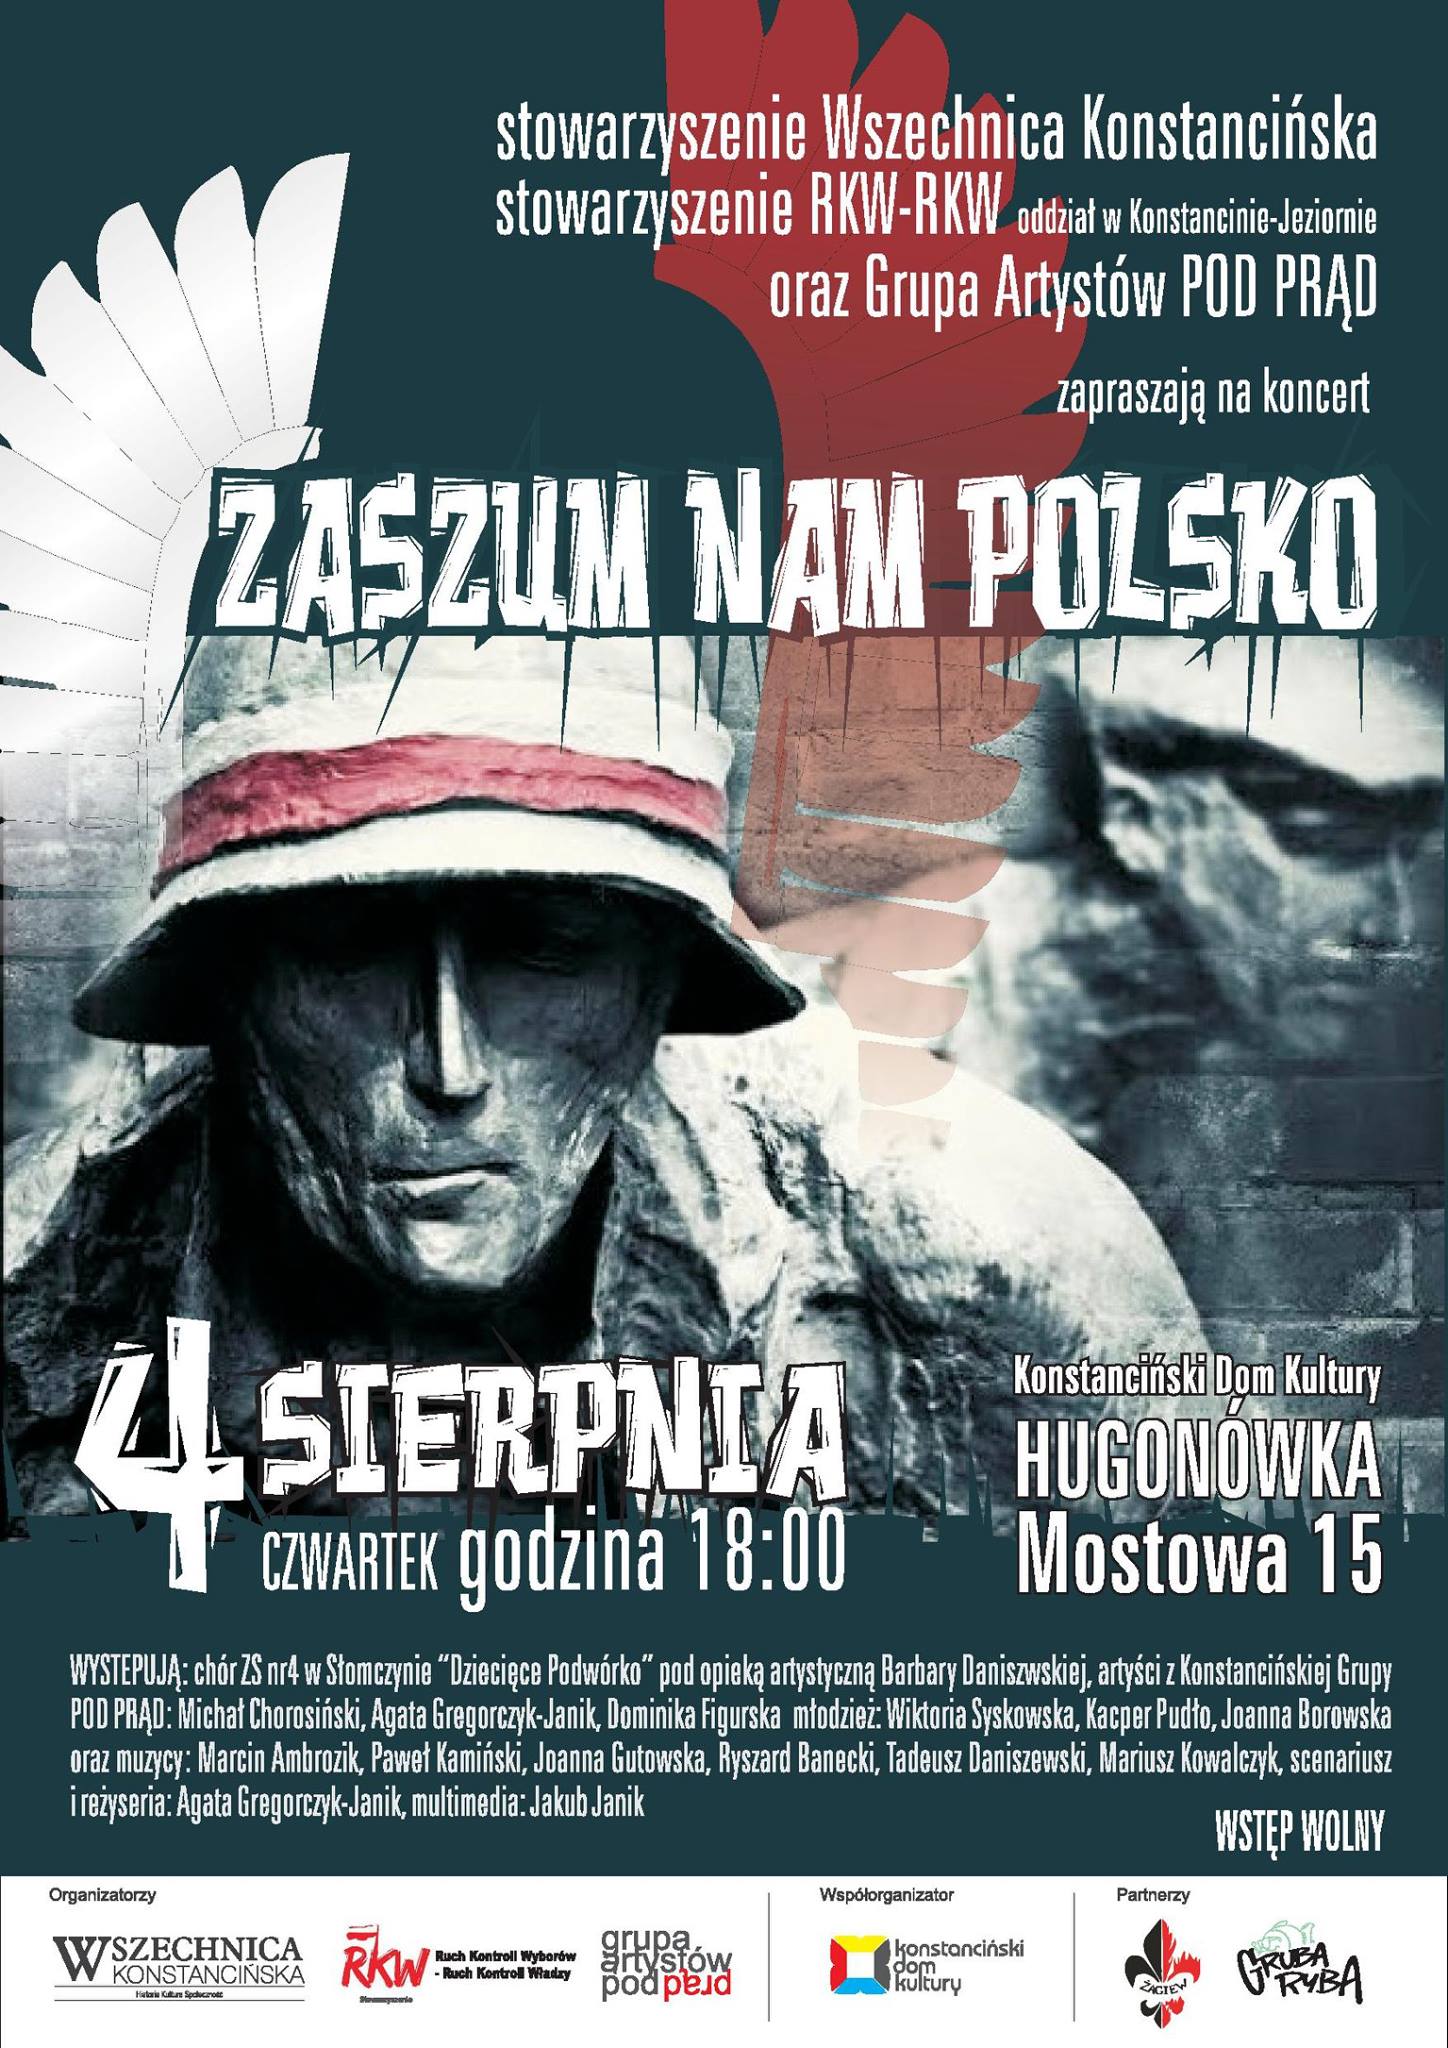 Koncert Zaszum nam Polsko w wykonaniu konstancińskiej młodzieży i aktorów Grupy POD PRĄD